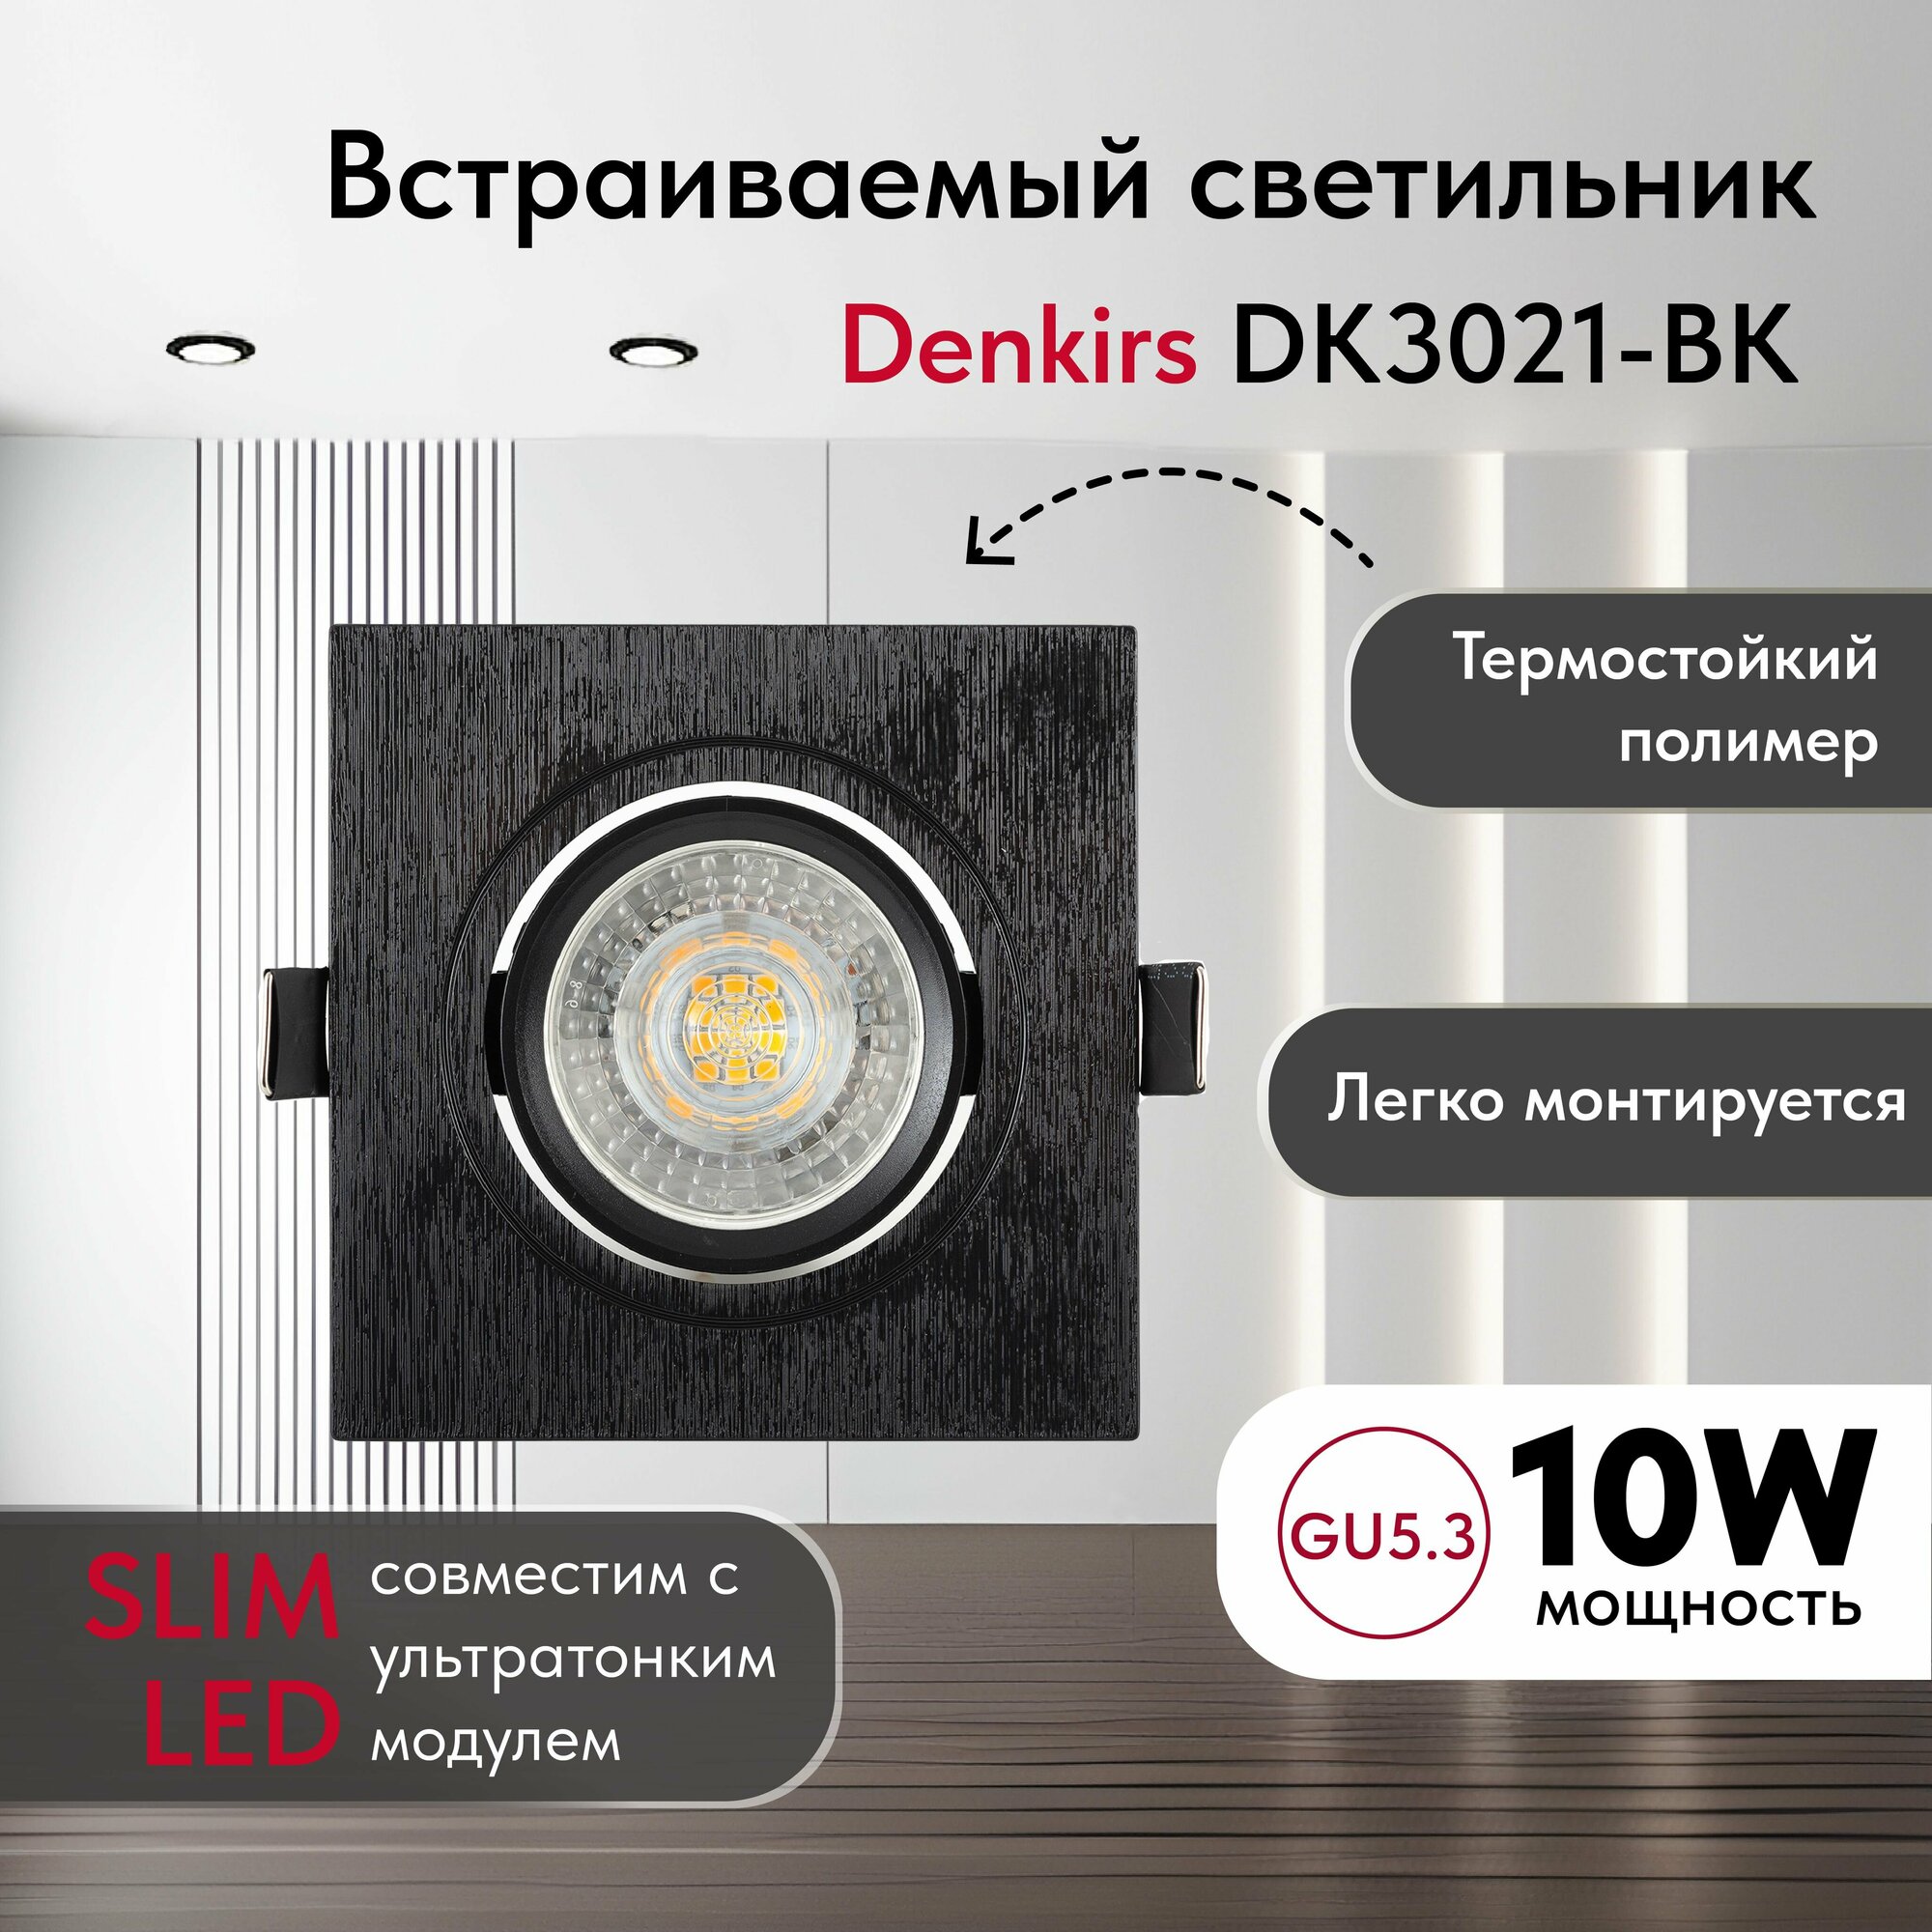 Светильник потолочный встраиваемый, влагозащищённый DENKIRS DK3021-BK, IP 20, 10 Вт, GU5.3, LED, черный, пластик